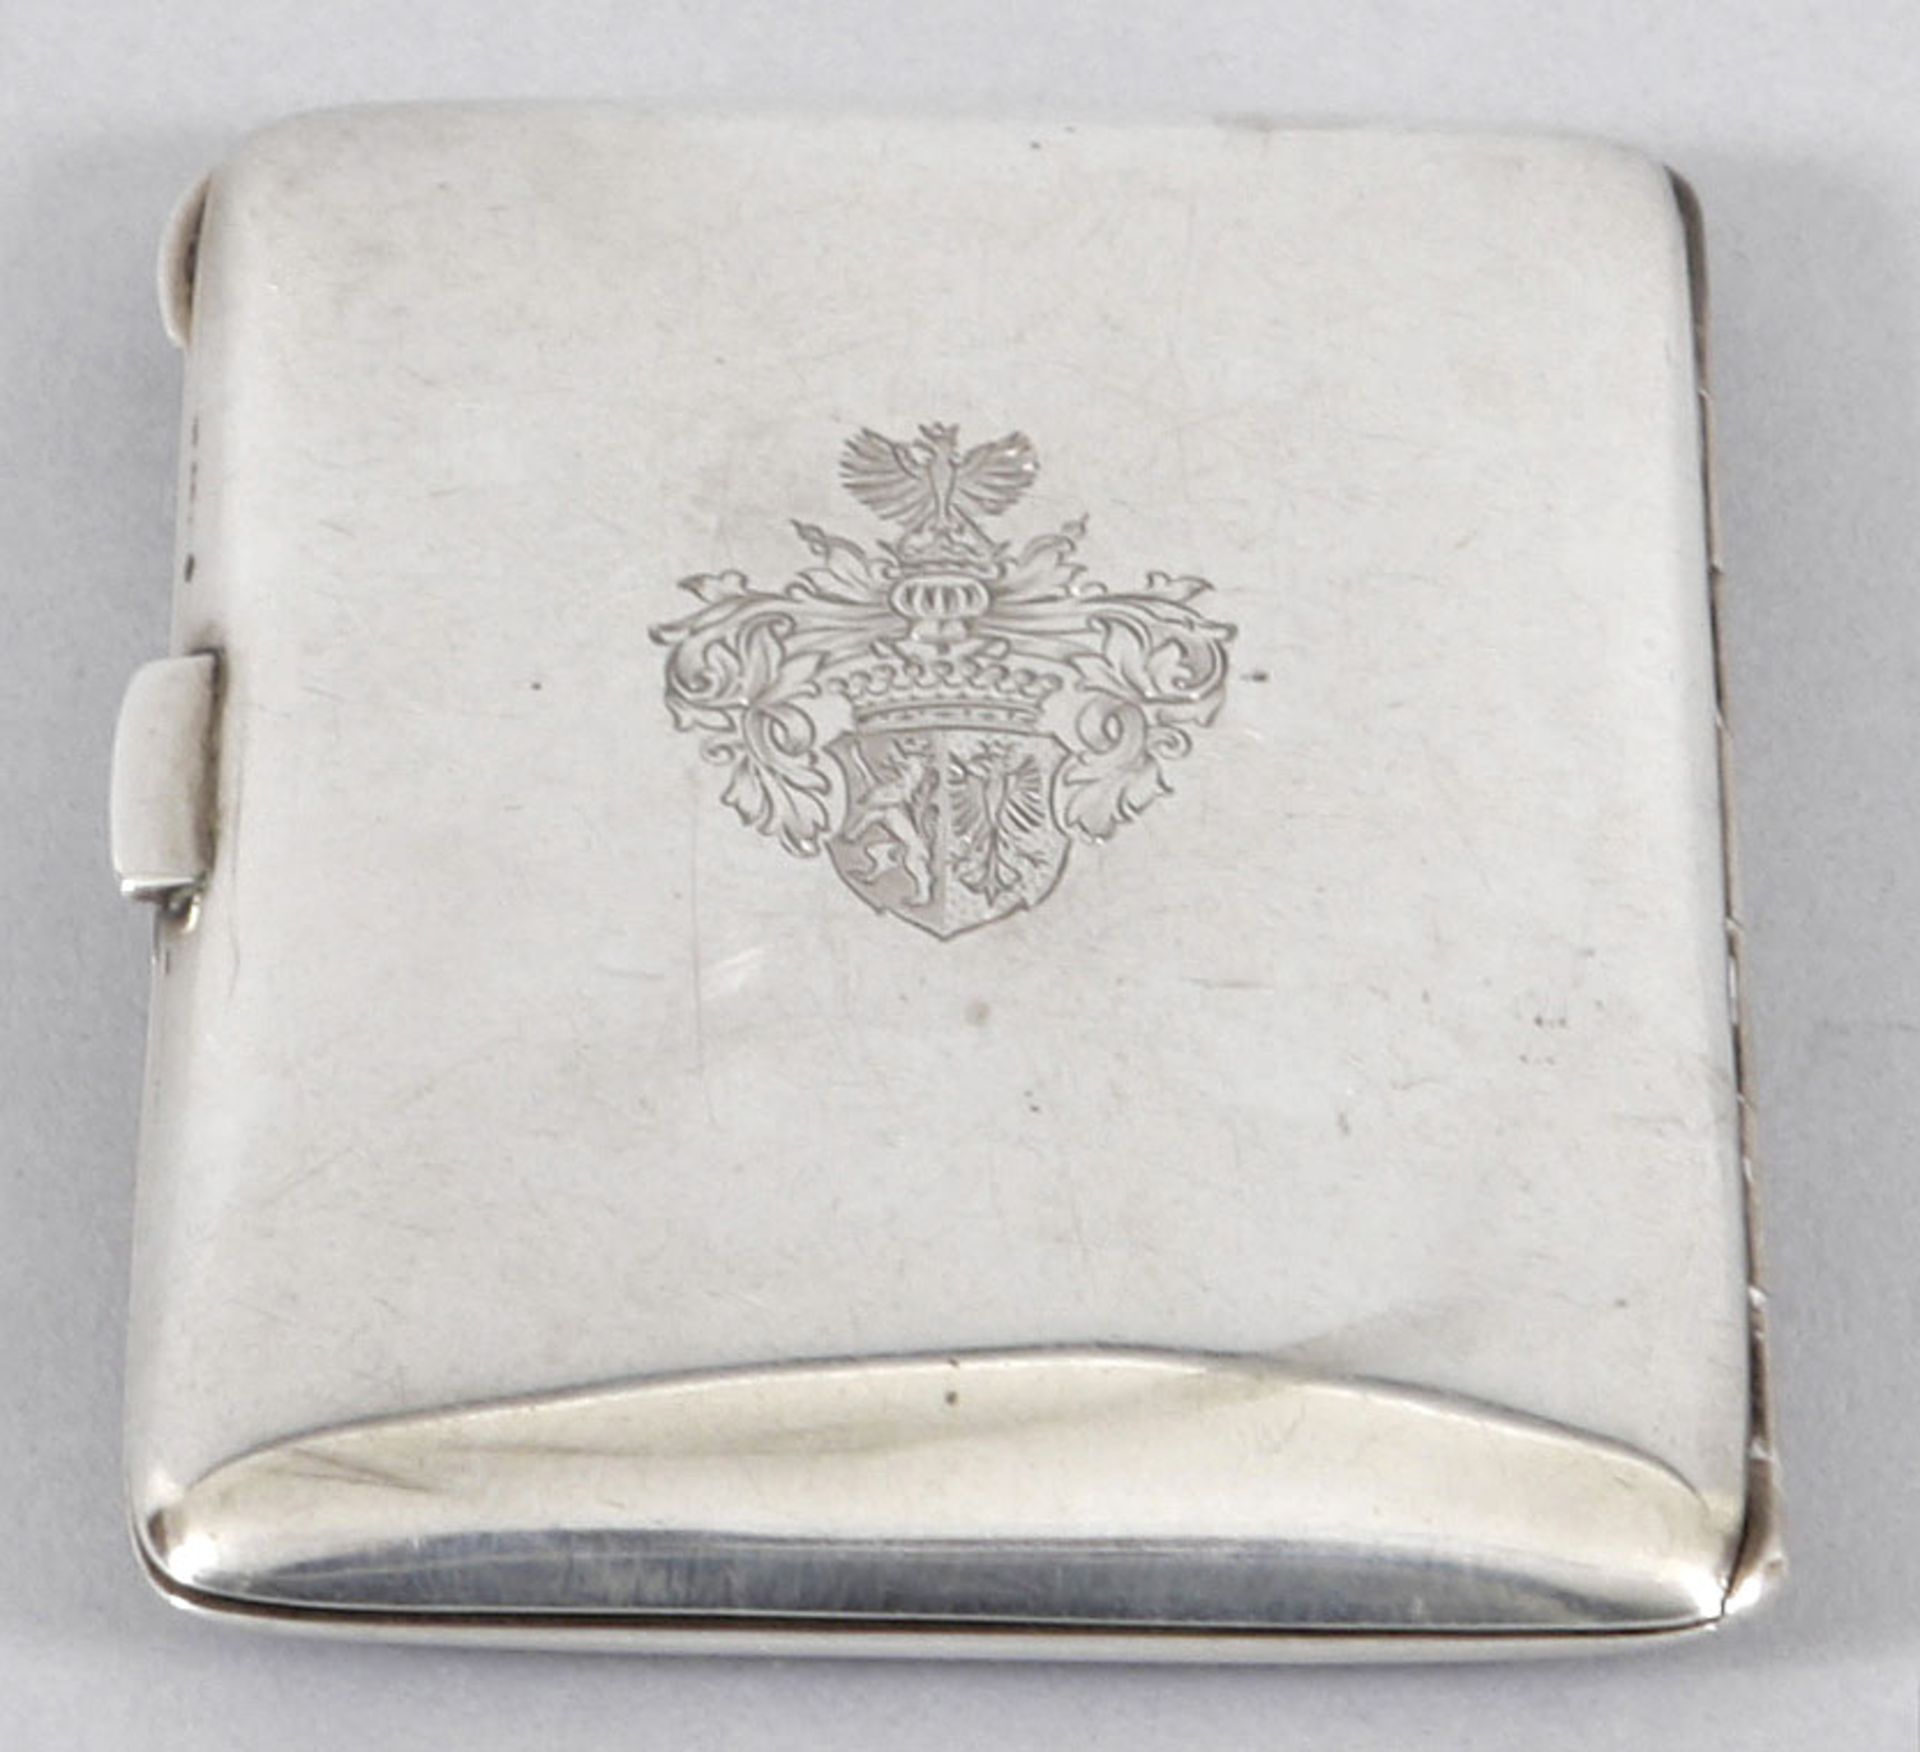 Kl. Etui 900er Silber/Email, Deutschland/Österreich, um 1900/Anf.20.Jh. Scharniertes Etui in - Bild 3 aus 5